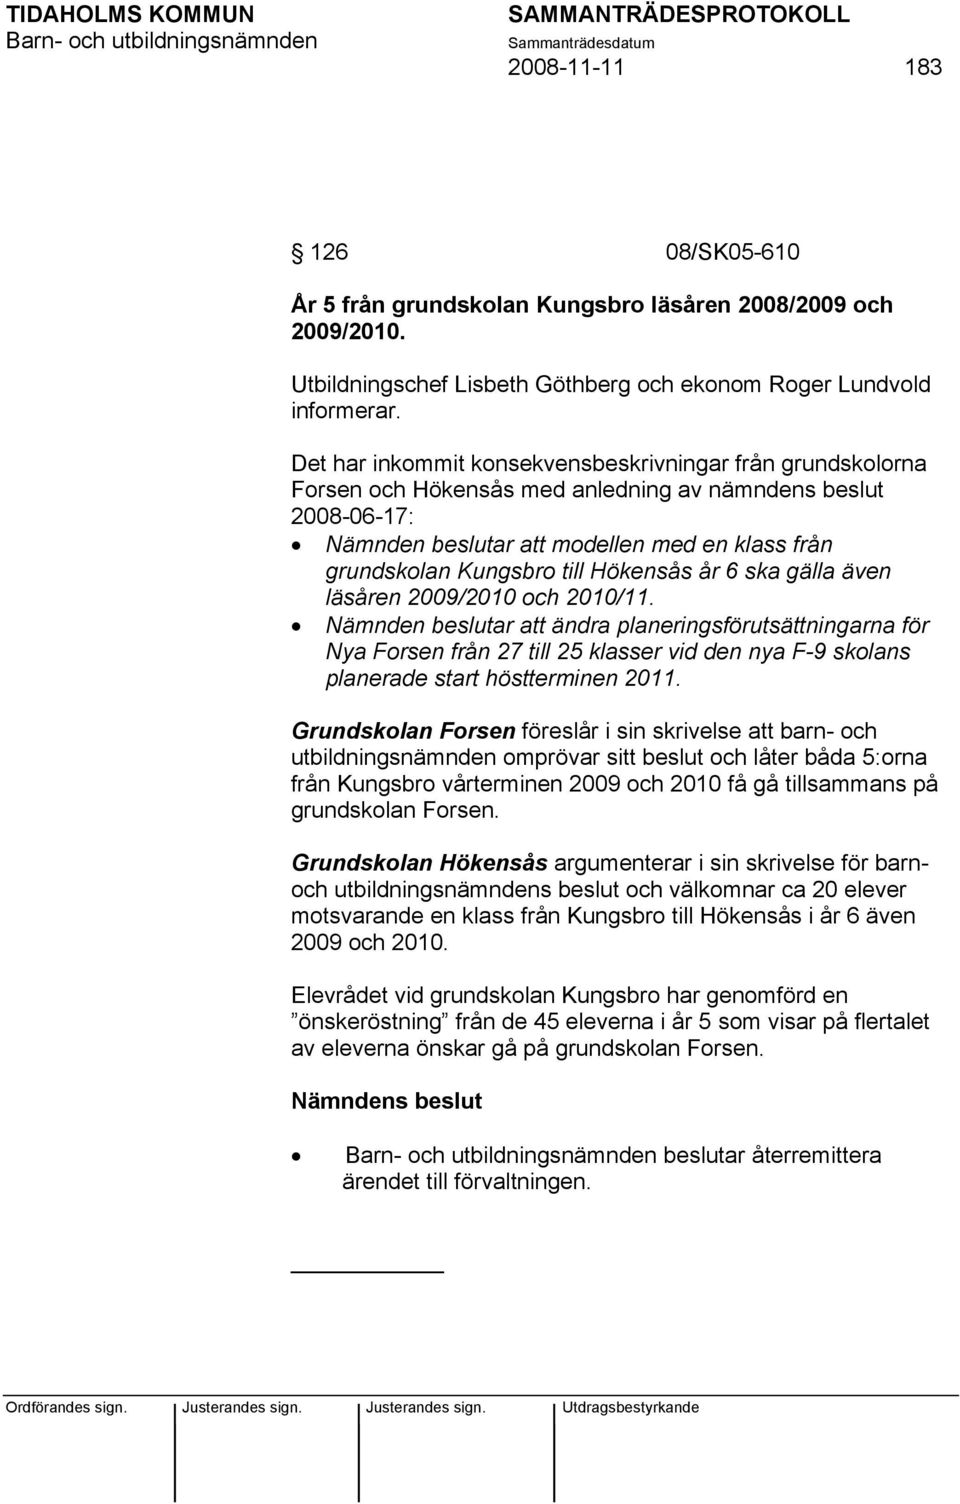 Hökensås år 6 ska gälla även läsåren 2009/2010 och 2010/11.